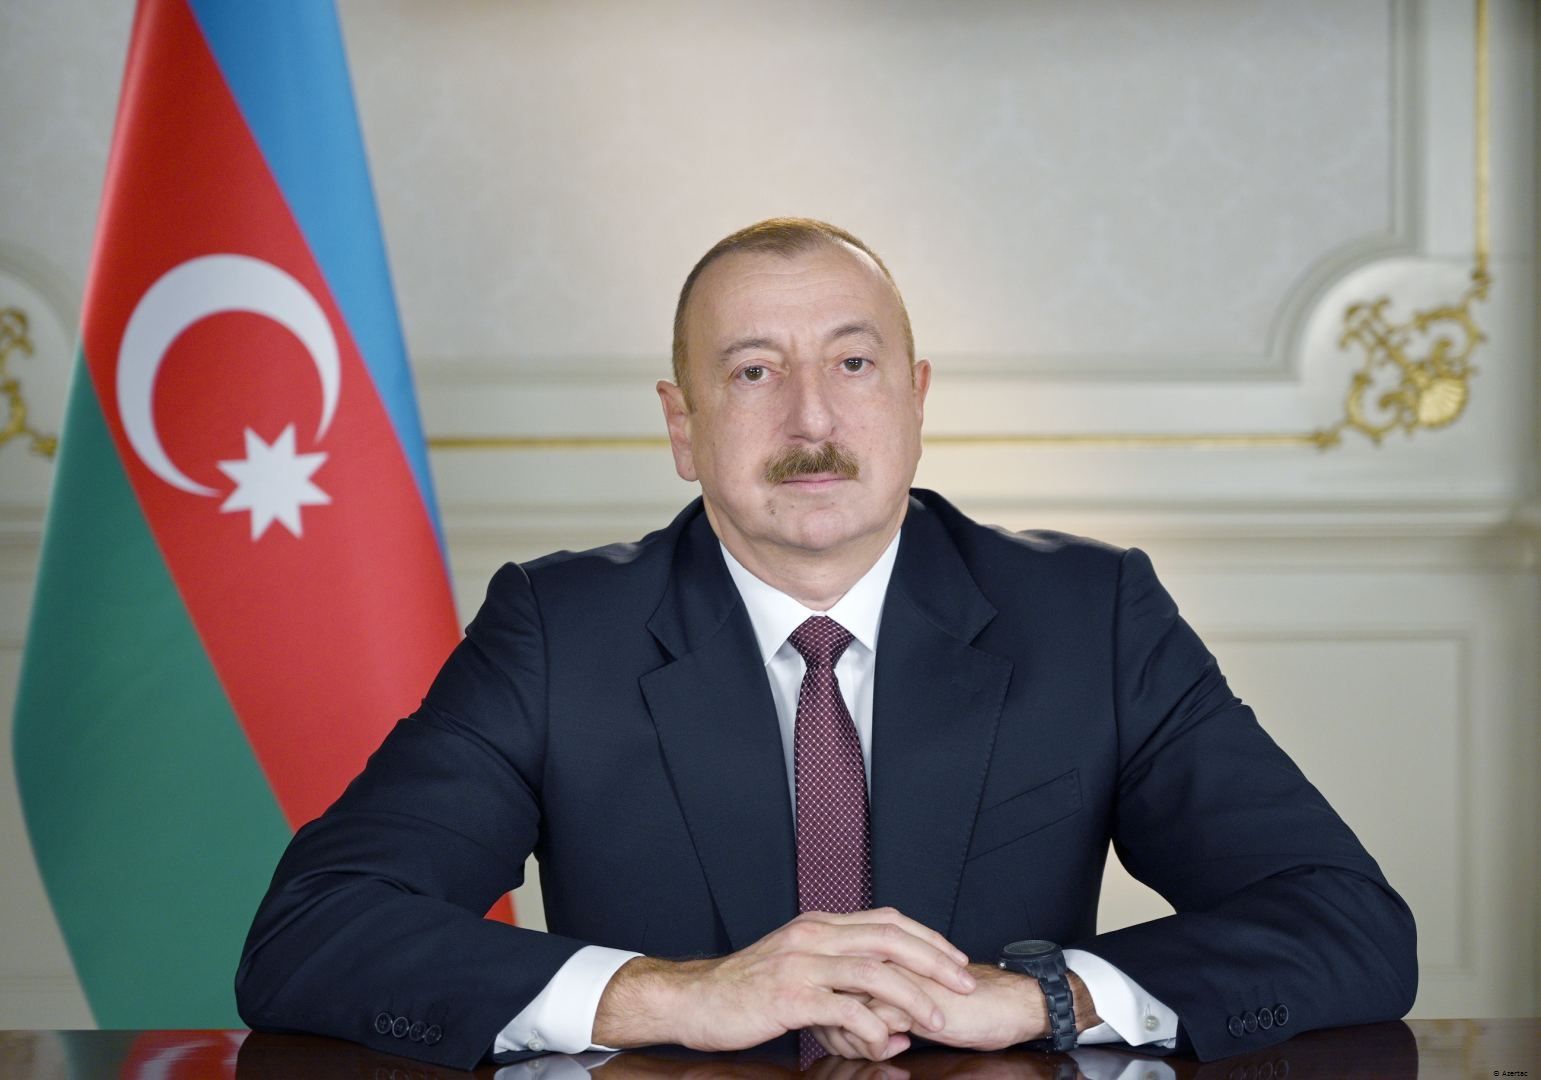 Le président azerbaïdjanais Ilham Aliyev s’adresse à la nation